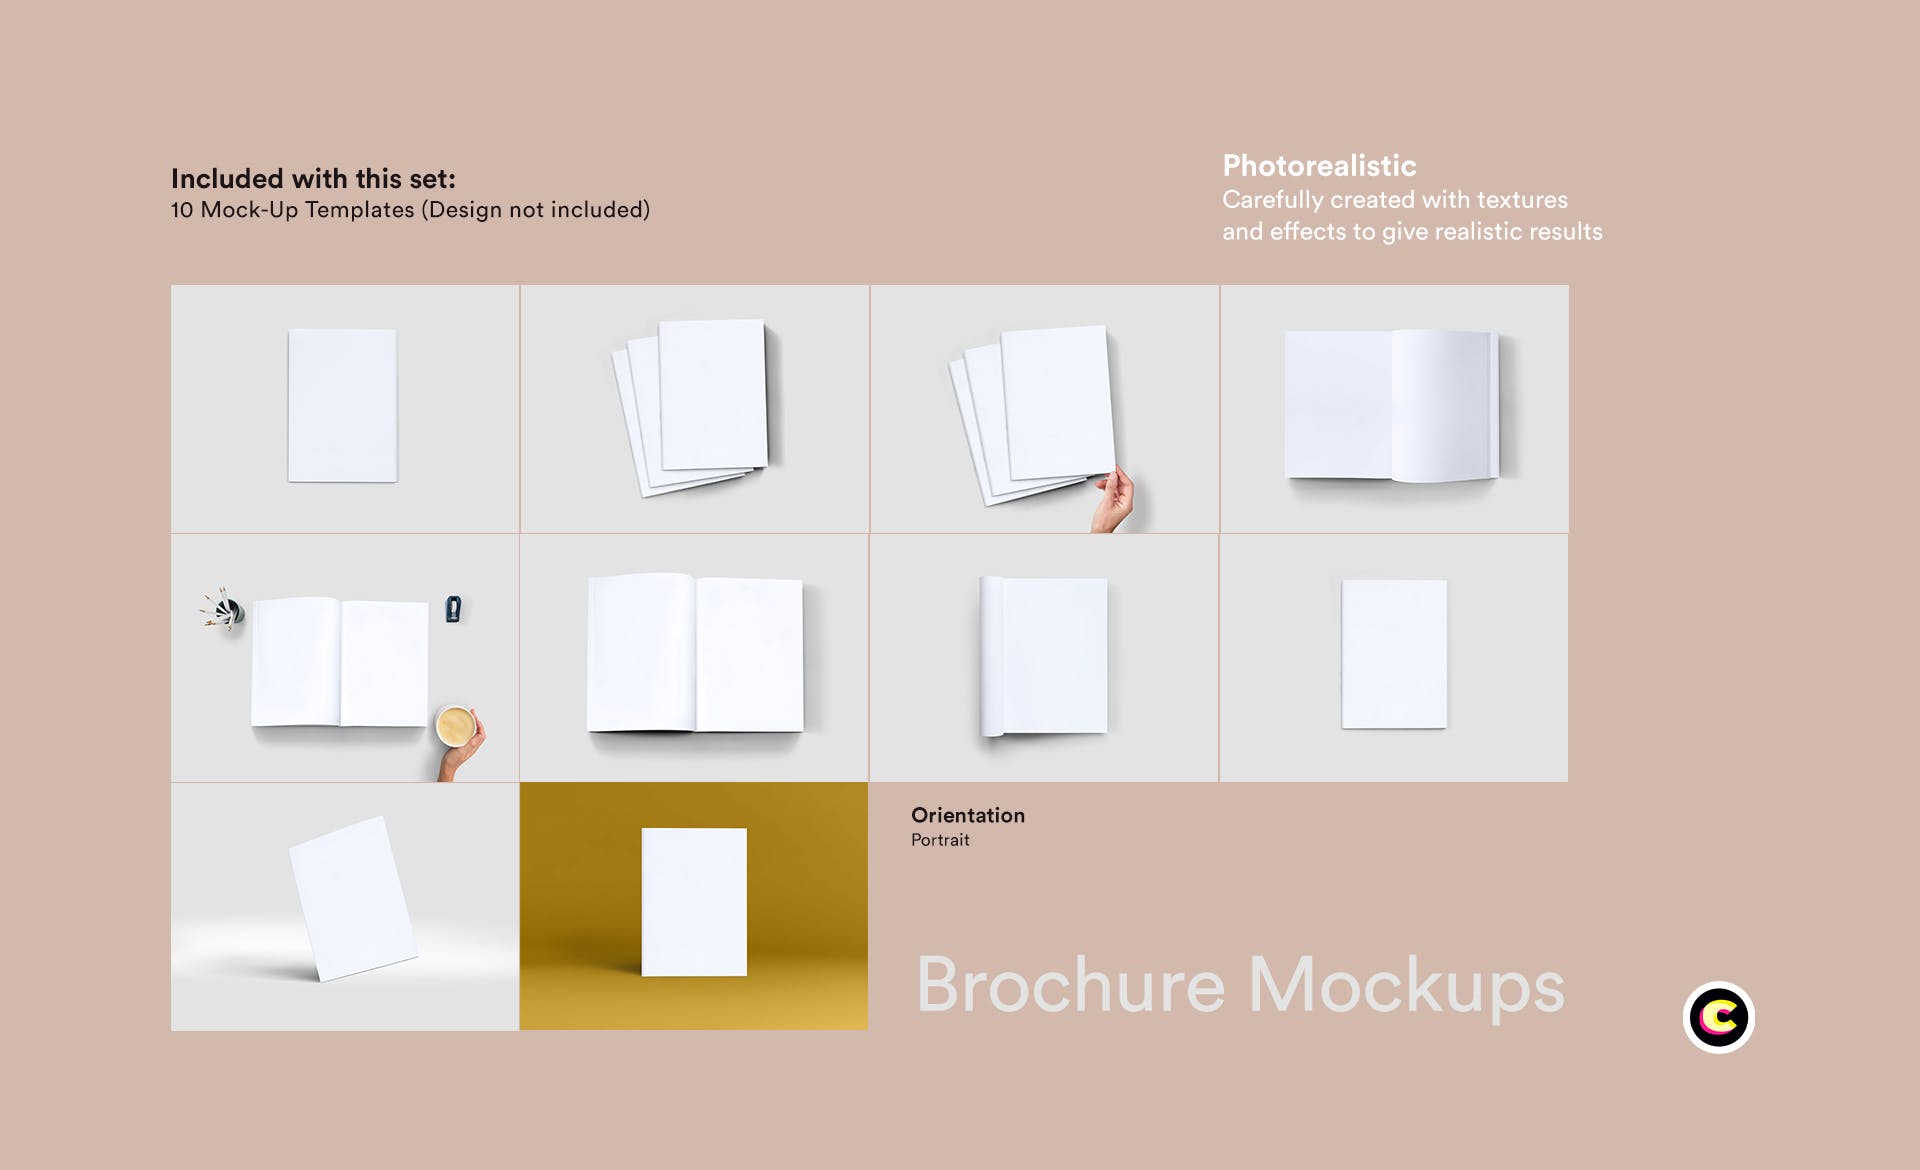 企业画册封面&版式设计效果图样机第一素材精选 Brochure Mock Up插图(2)